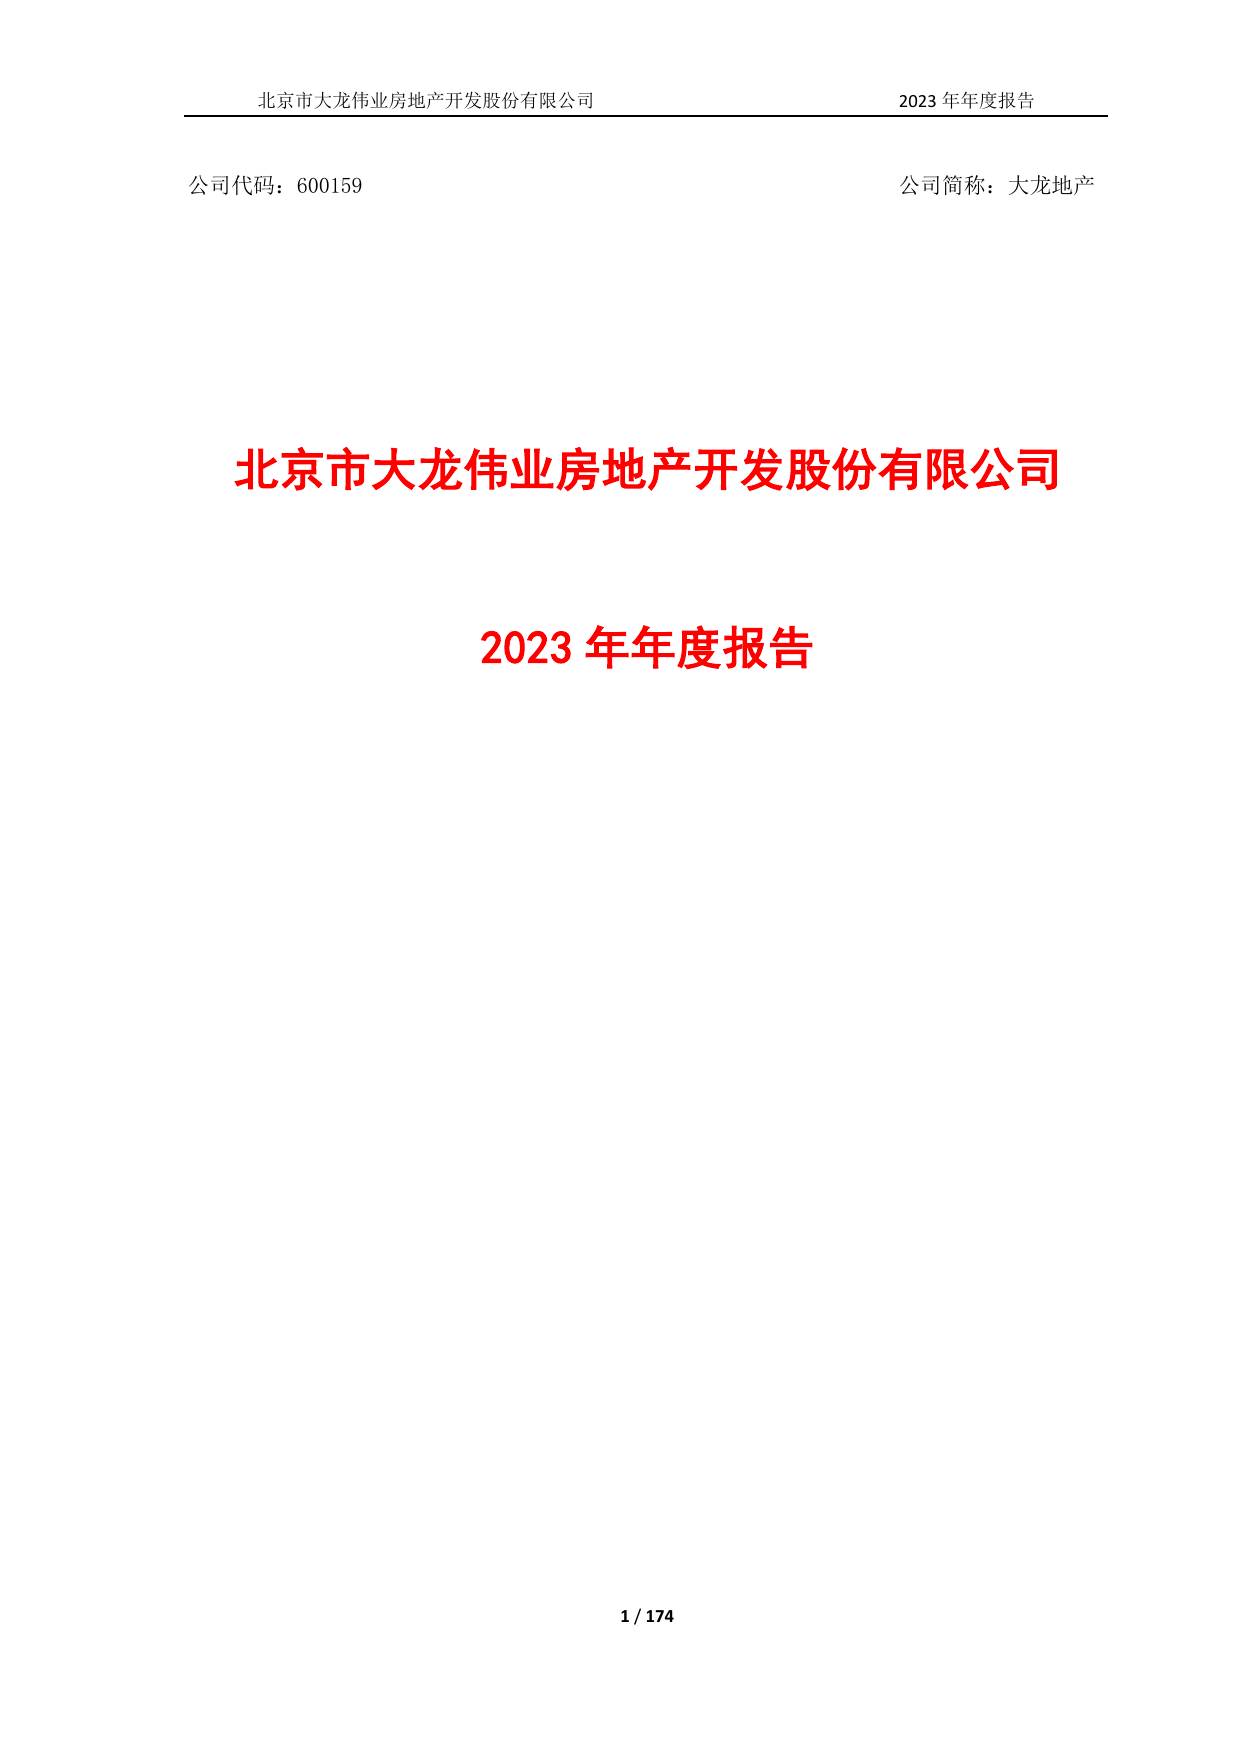 大龙地产2023年年度报告.pdf